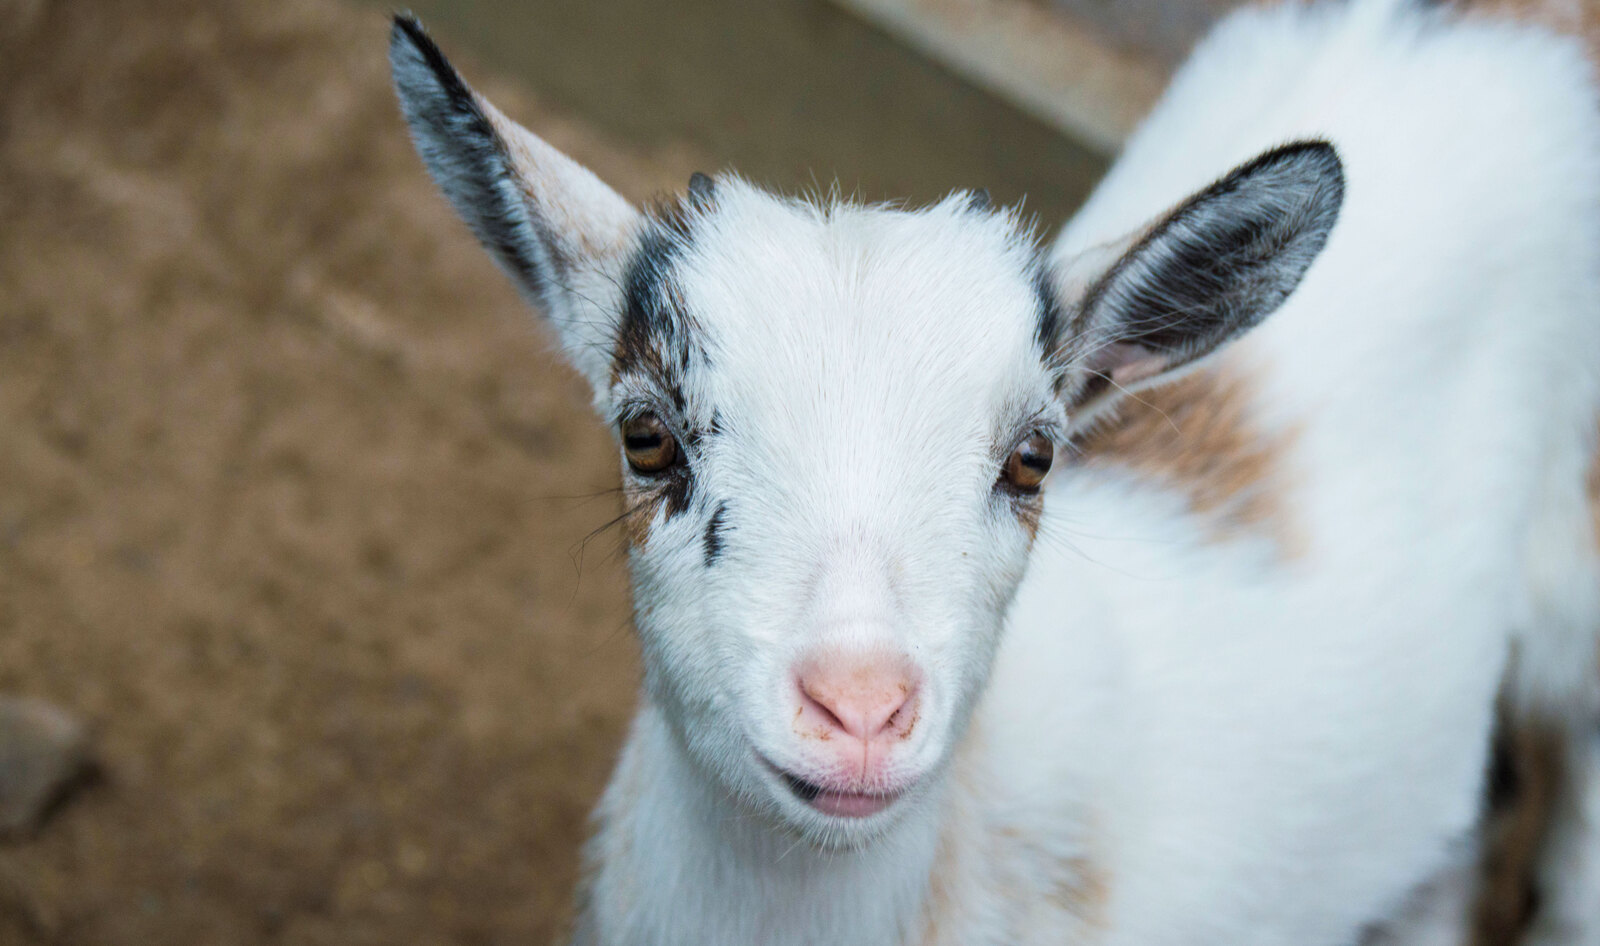 “Ethical” Farm Shutters, Refuses to Let Sanctuaries Rescue 200 Animals